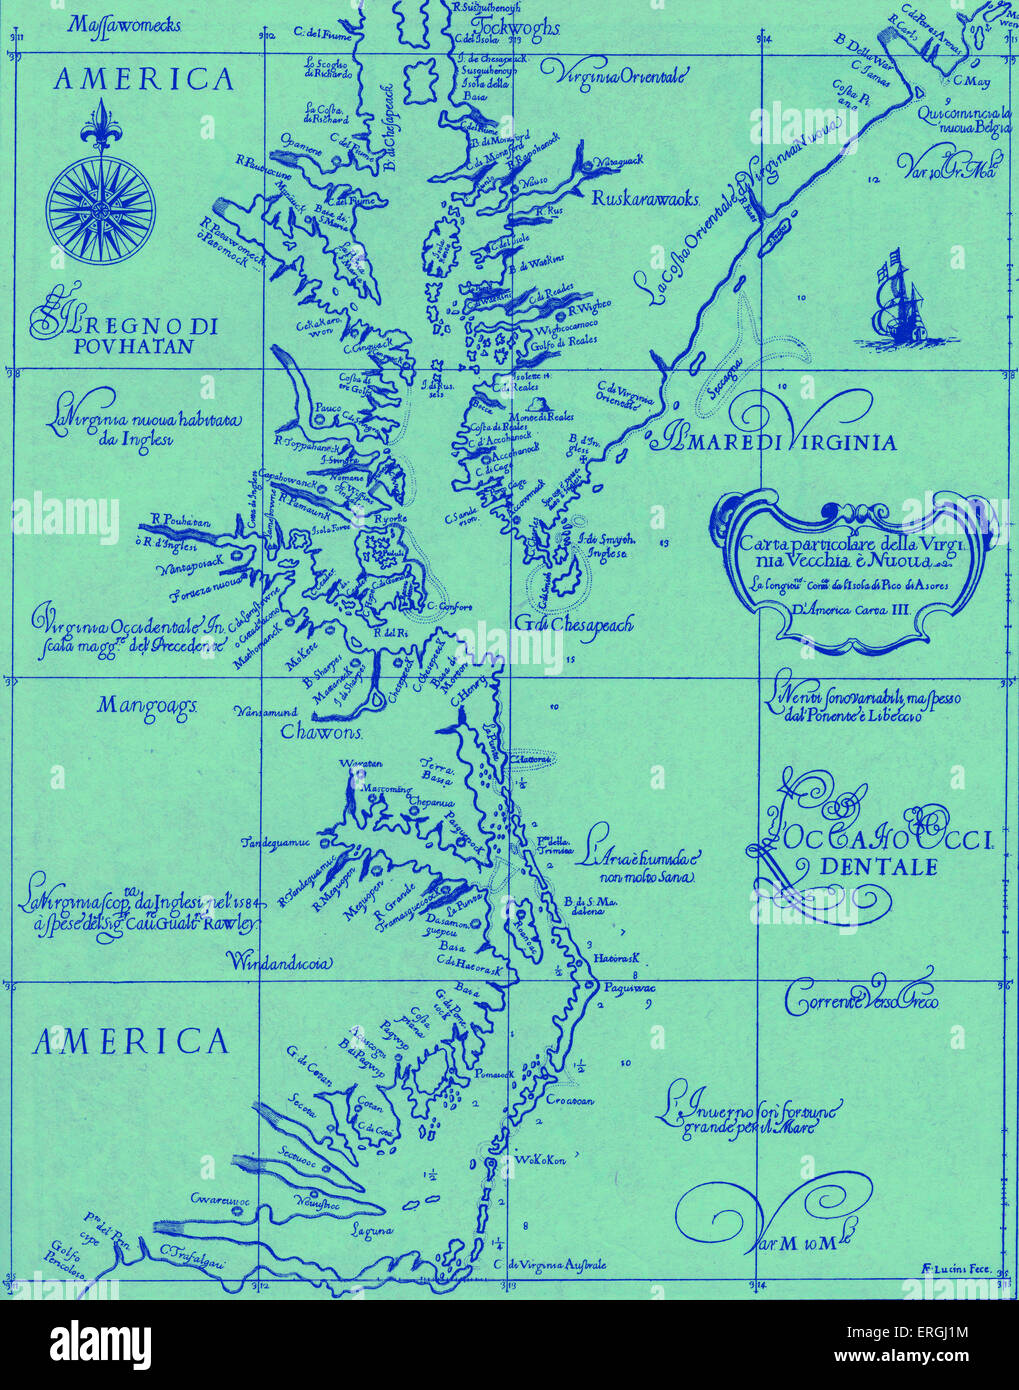 Mappa di vecchio e nuovo Virginia - pubblicato in Dudley 's 'Dell' Arcano del Mare", 1646- 47. Colonie americane. Foto Stock